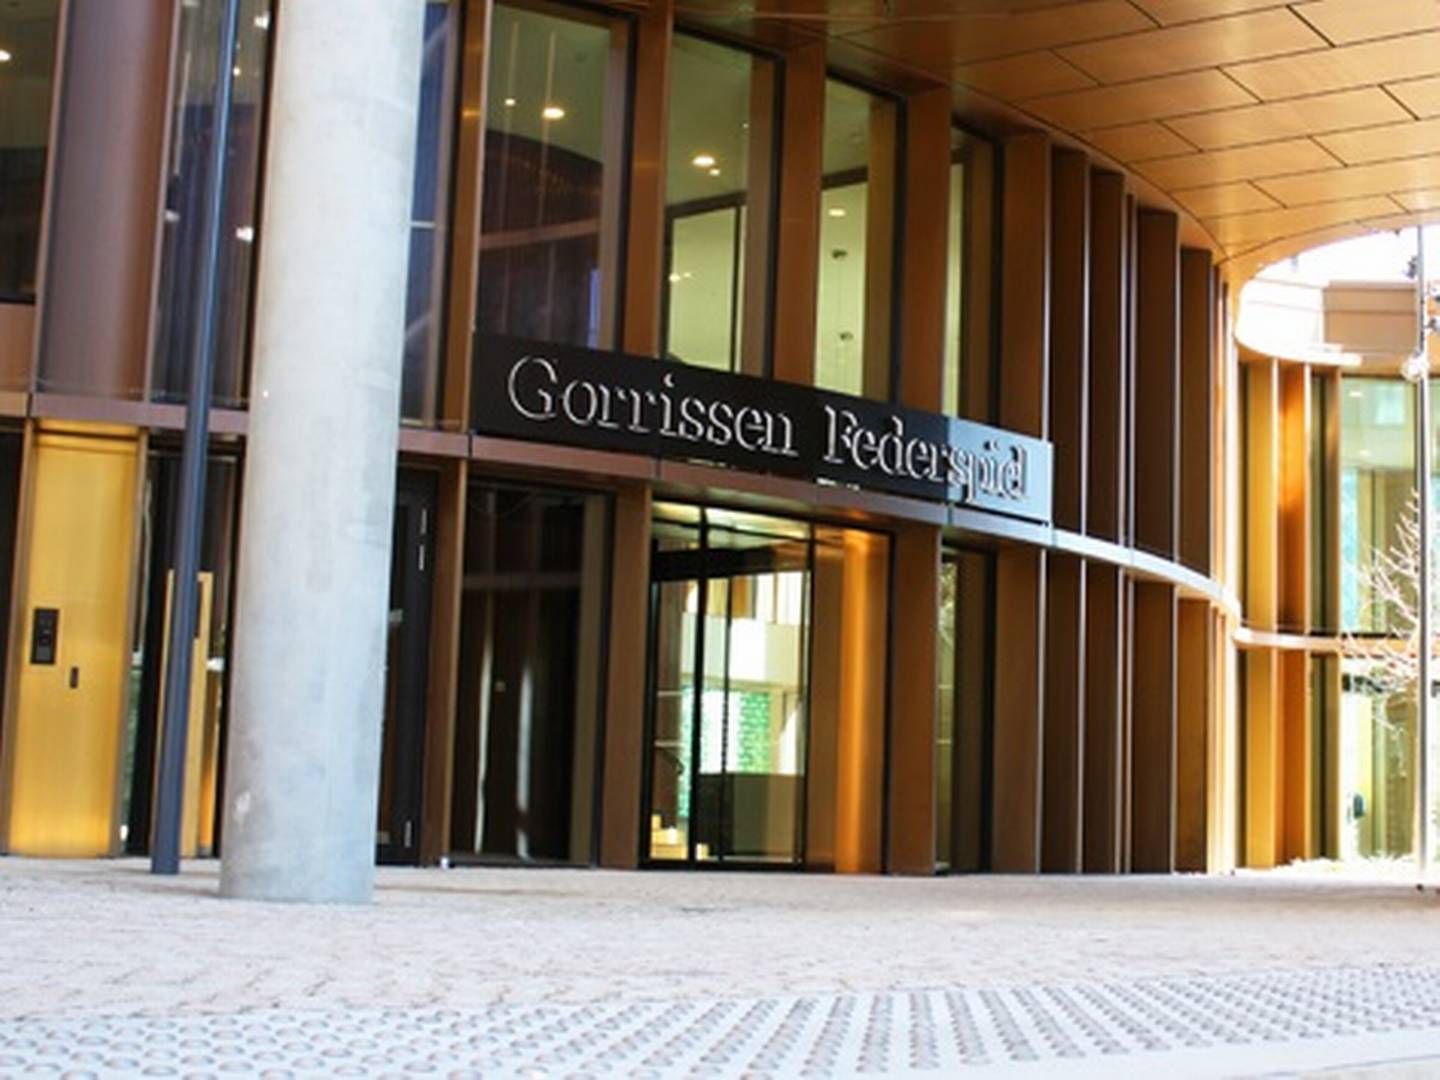 Gorrissen Federspiel vil have seks partnere i sin afdeling for fast ejendom i København, når Bech-Bruun-advokaterne er på plads her i Axel Towers over for Tivoli. | Foto: Pr